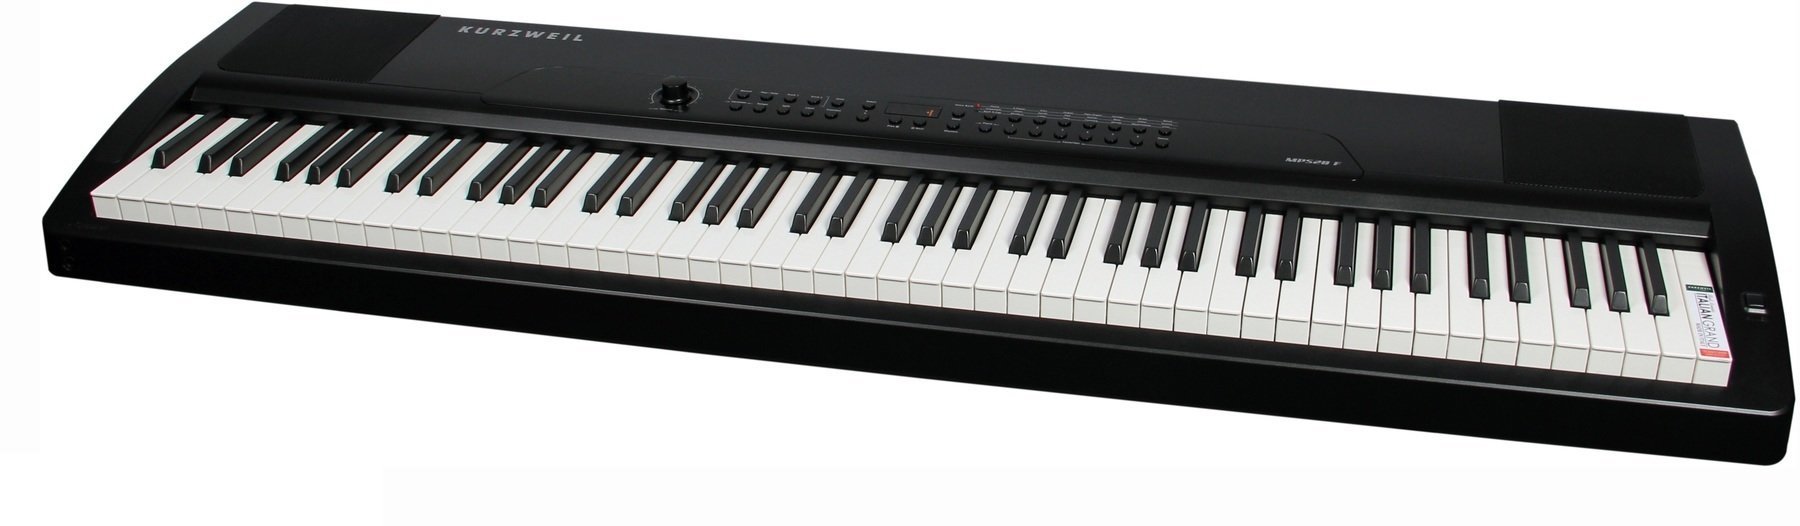 Piano de escenario digital Kurzweil MPS20 Portable Digital Piano